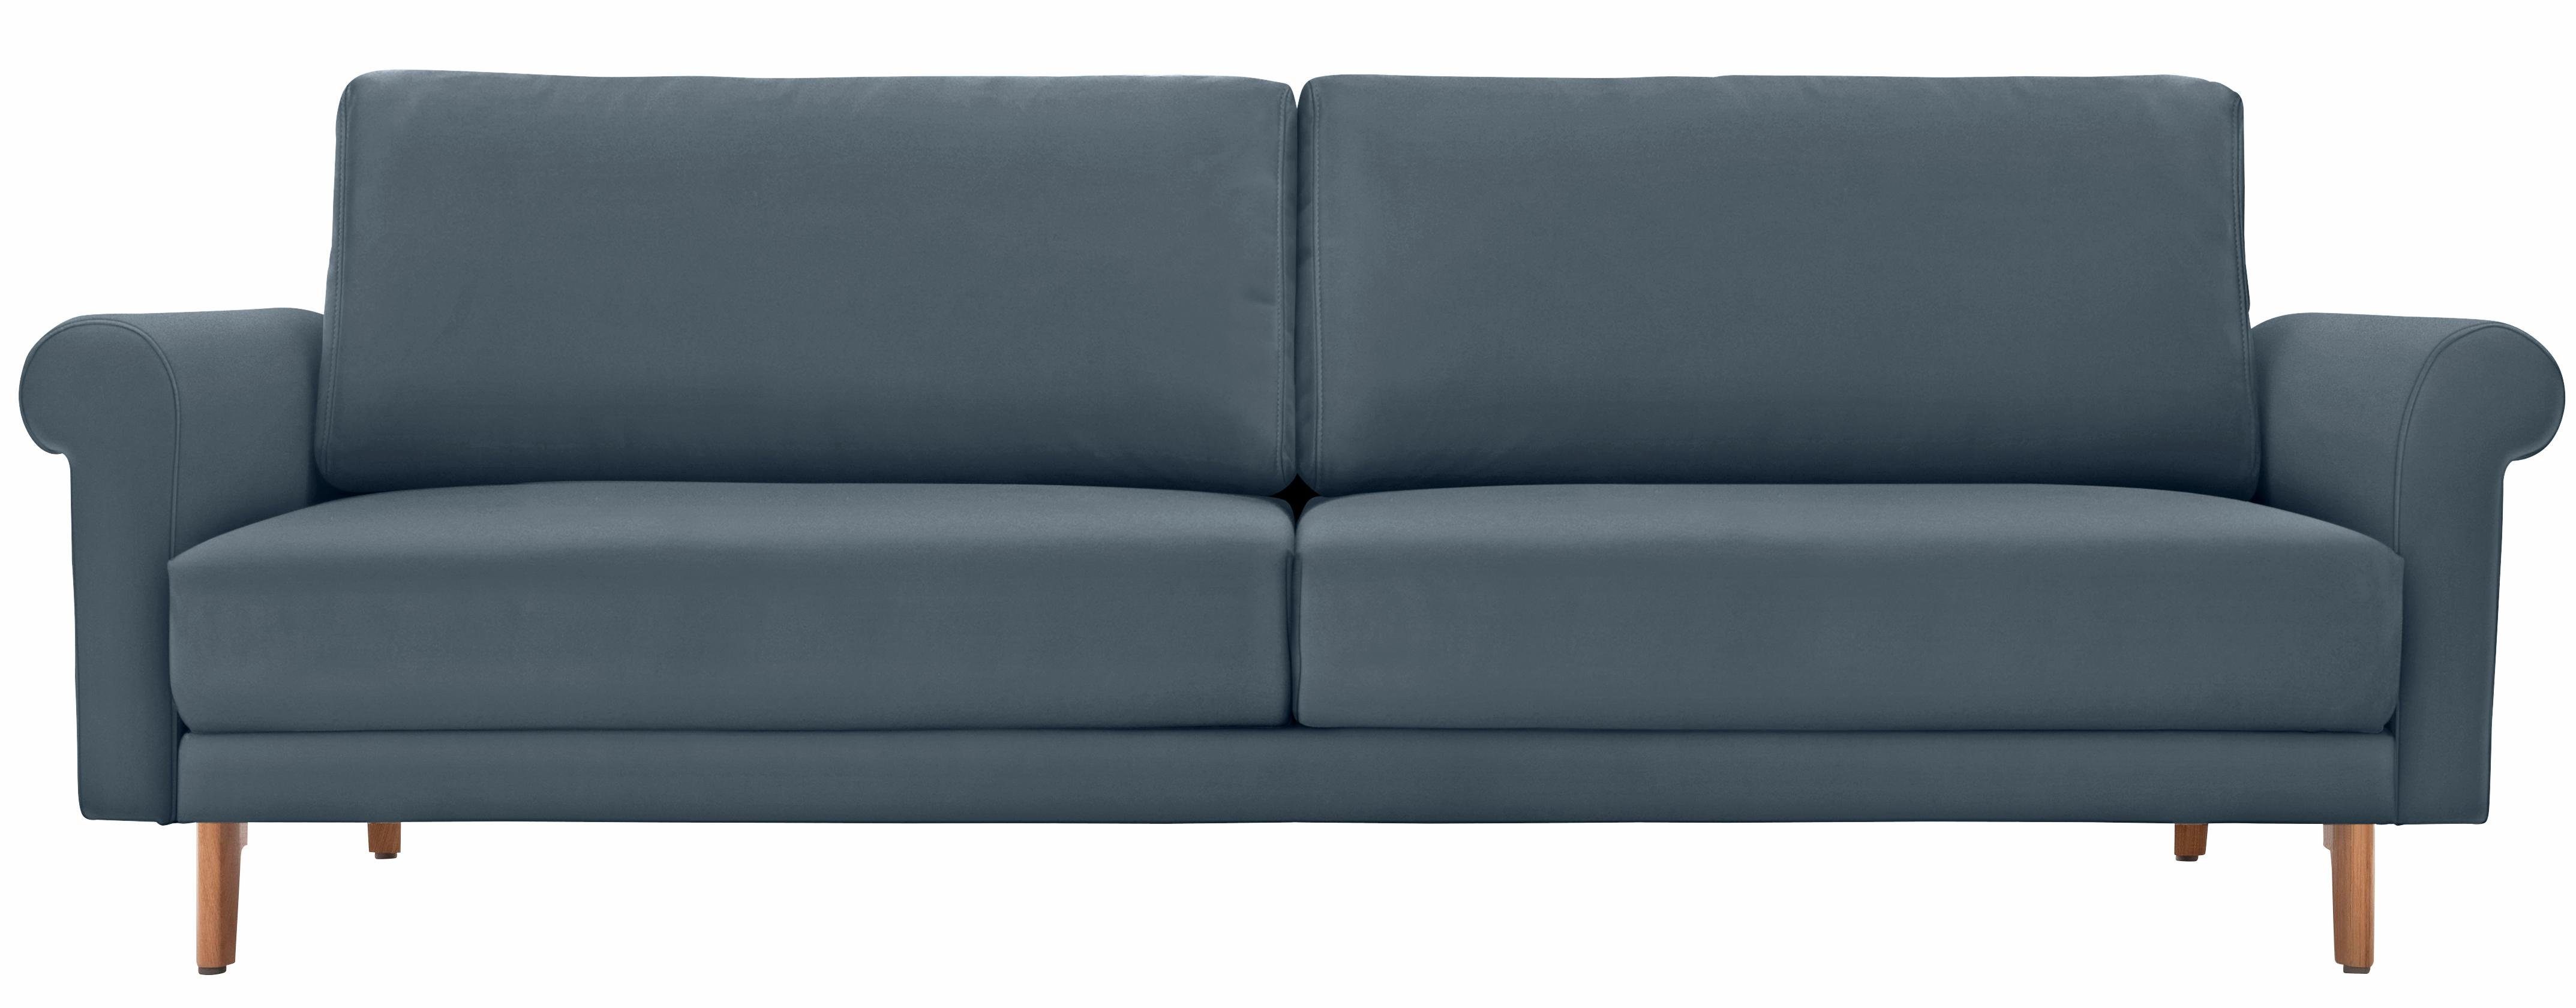 hülsta sofa 3-Sitzer hs.450, modern Landhaus, Breite 208 cm, Füße in Nussbaum | Einzelsofas